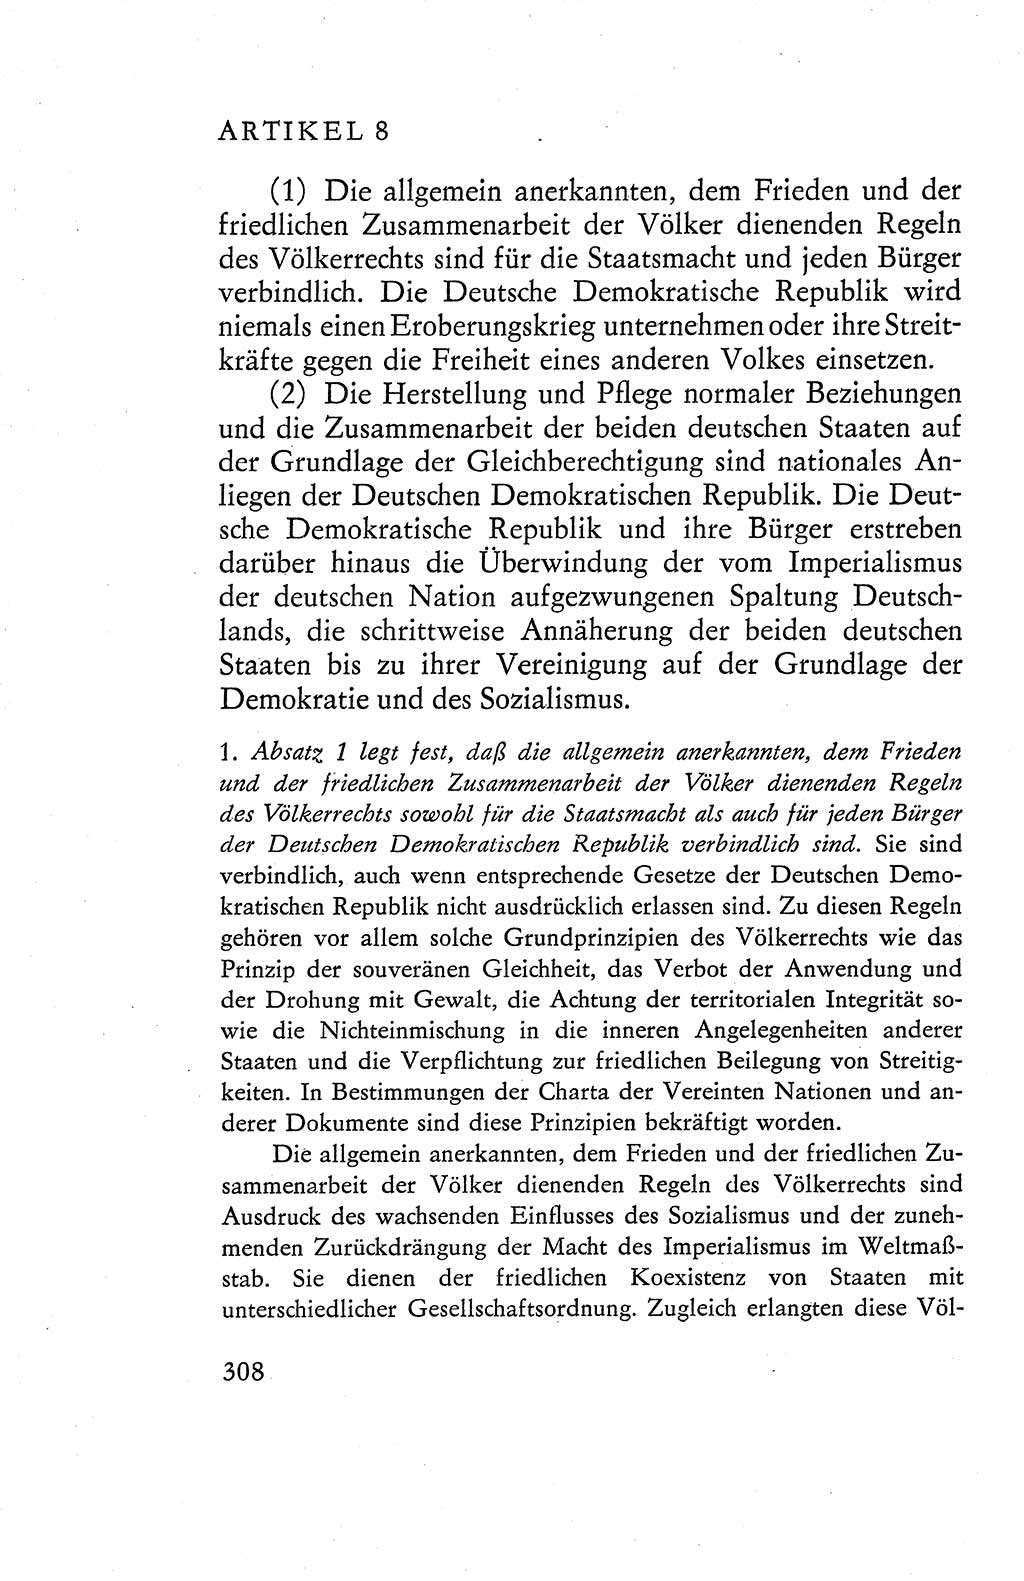 Verfassung der Deutschen Demokratischen Republik (DDR), Dokumente, Kommentar 1969, Band 1, Seite 308 (Verf. DDR Dok. Komm. 1969, Bd. 1, S. 308)